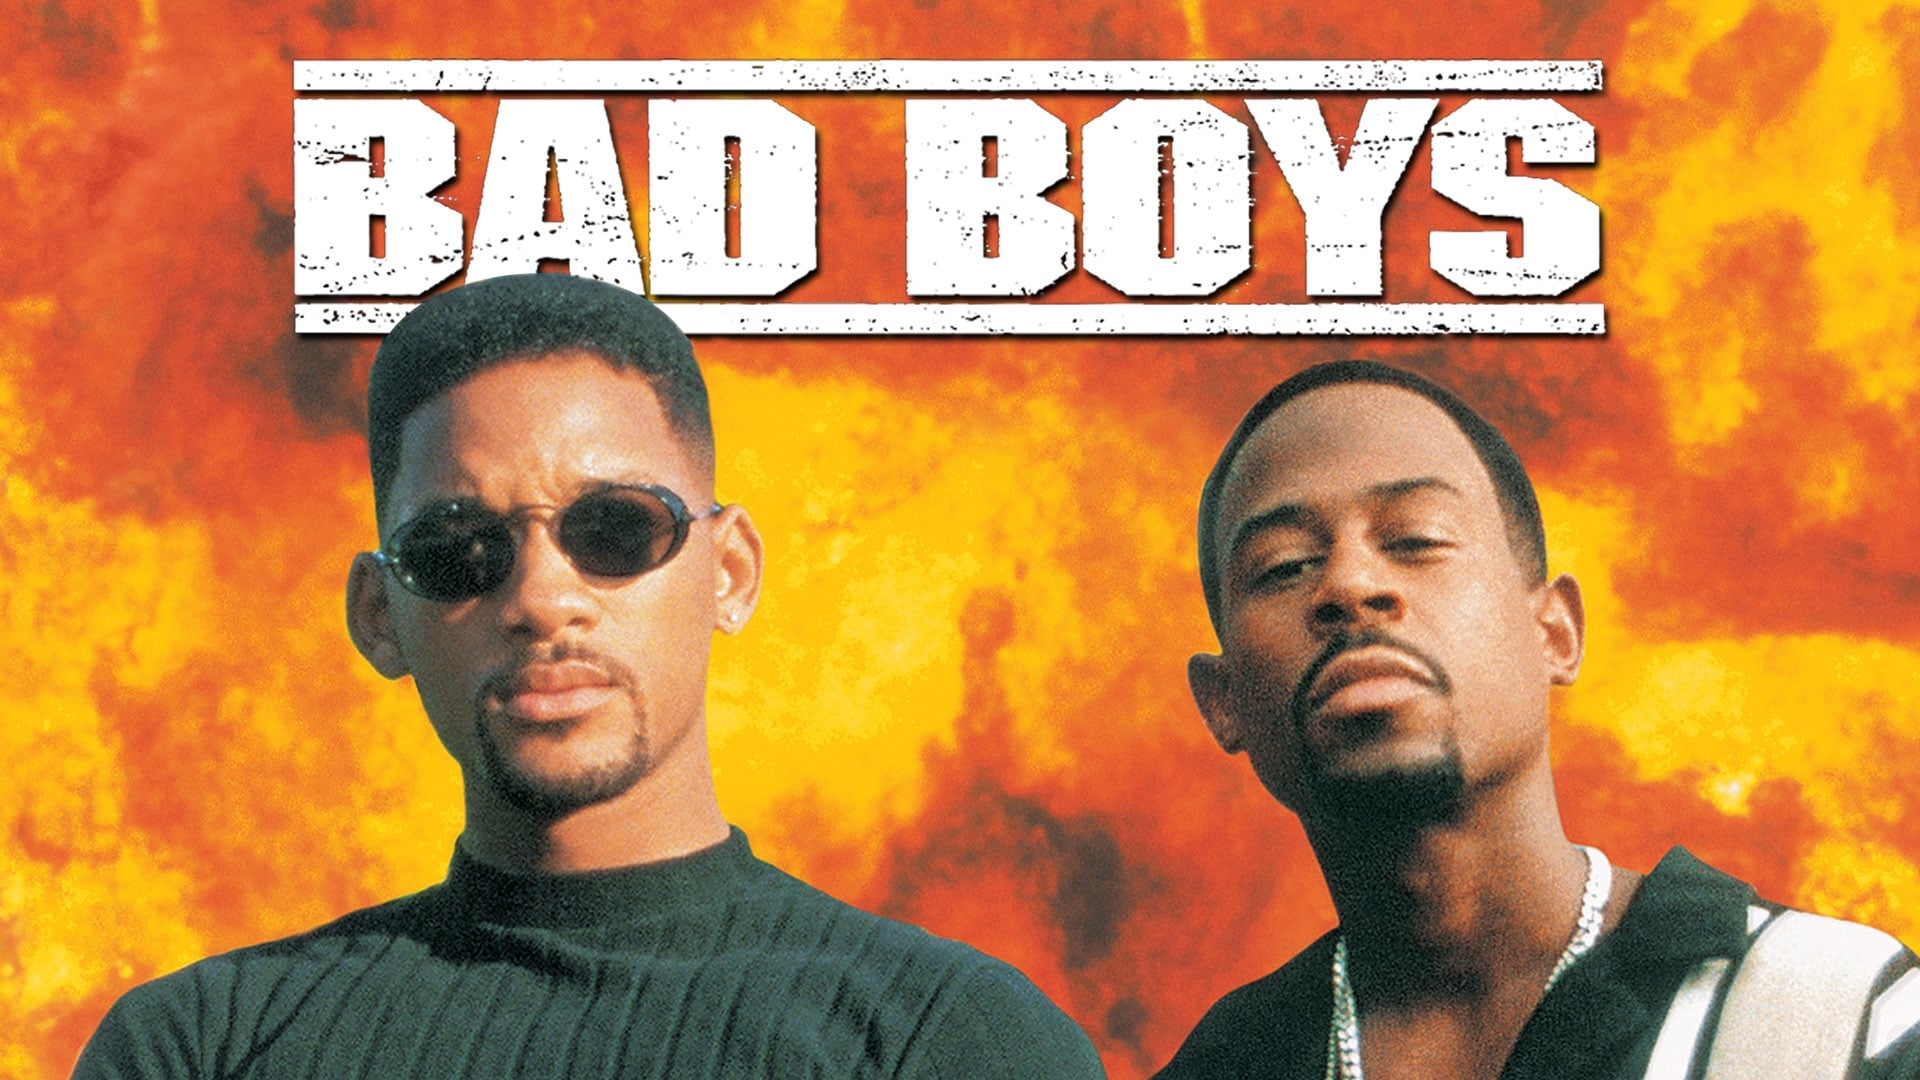 Bad Boys - Mire jók a rosszfiúk? (1995)